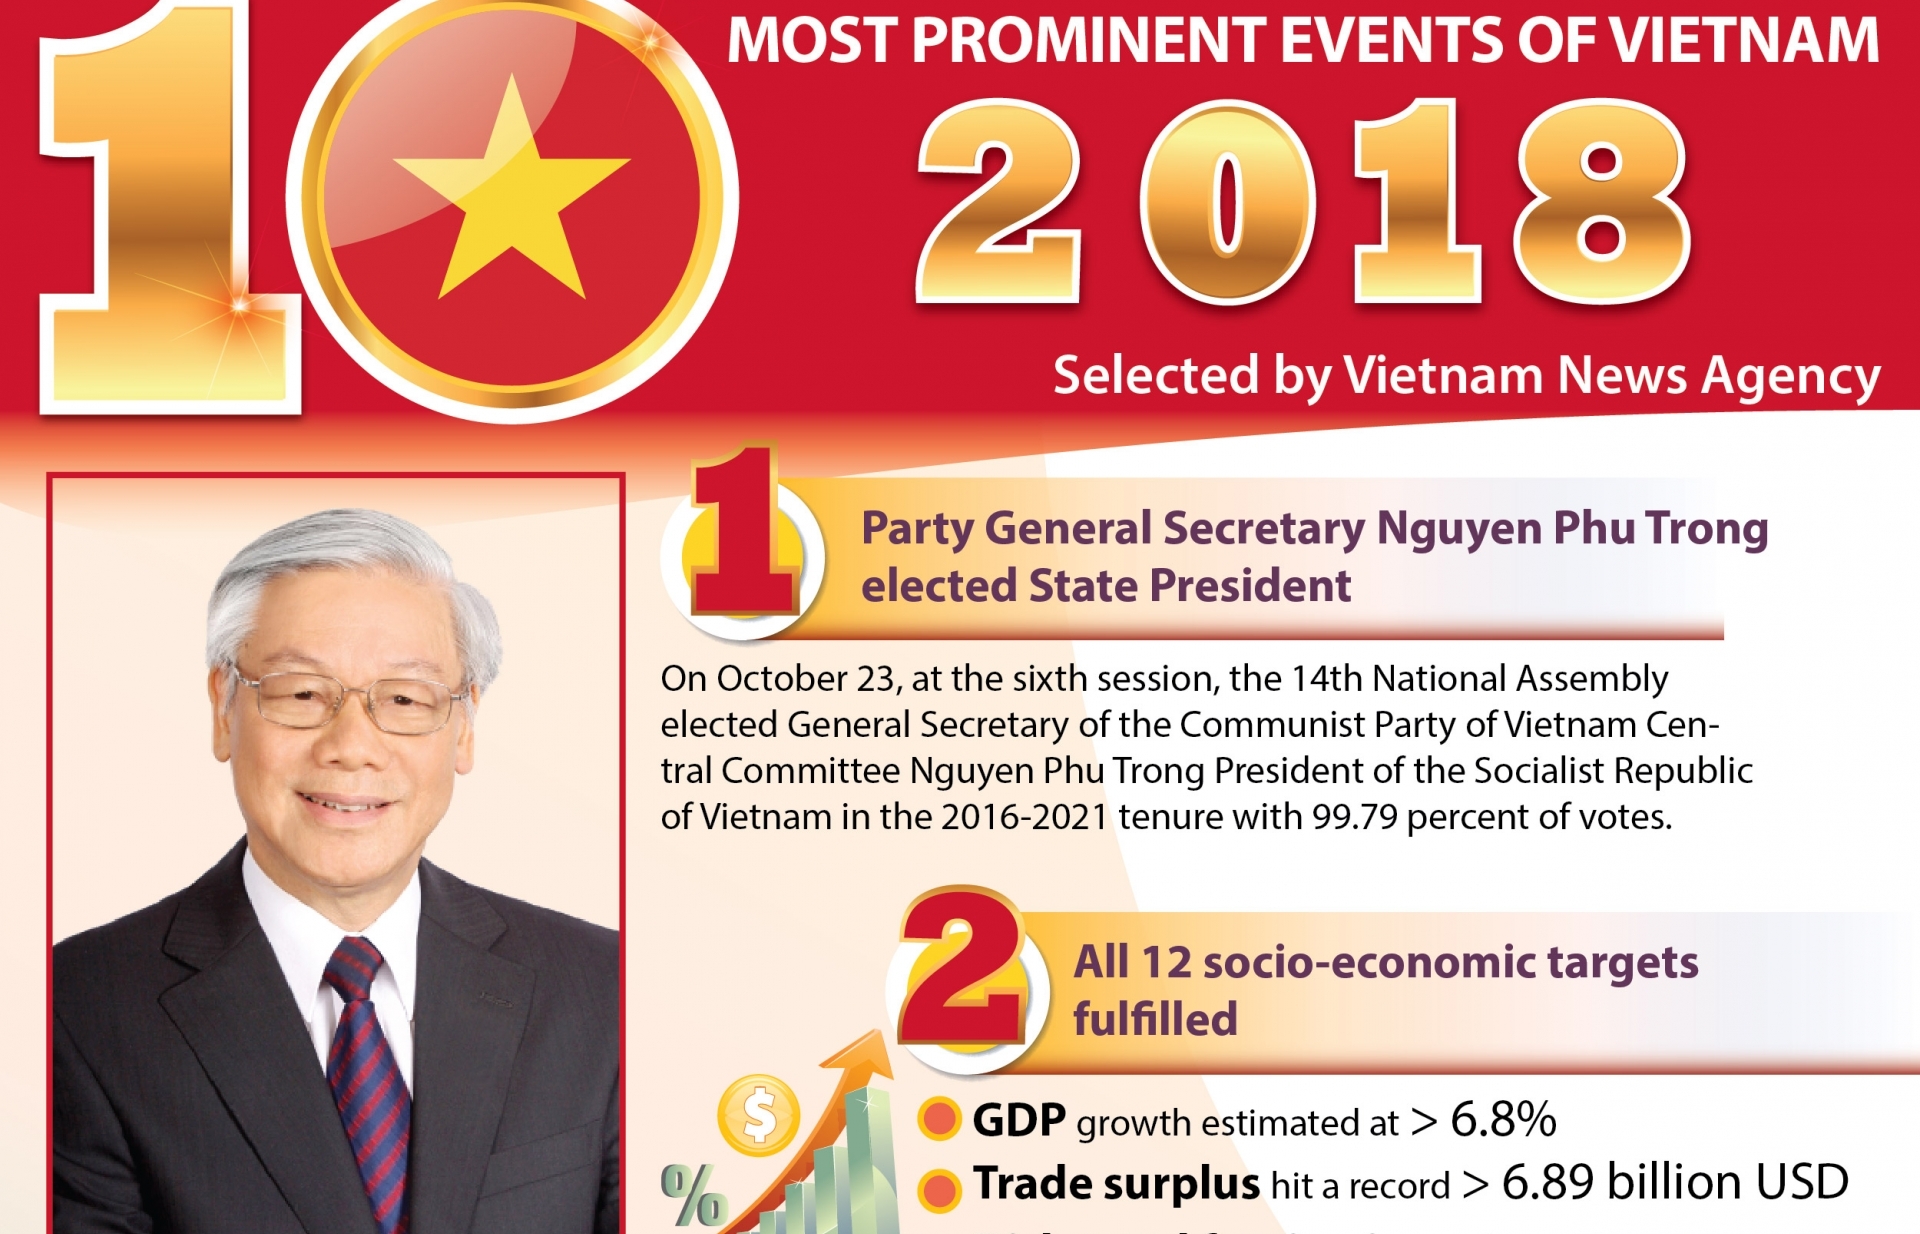 Top 10 events of Vietnam in 2018